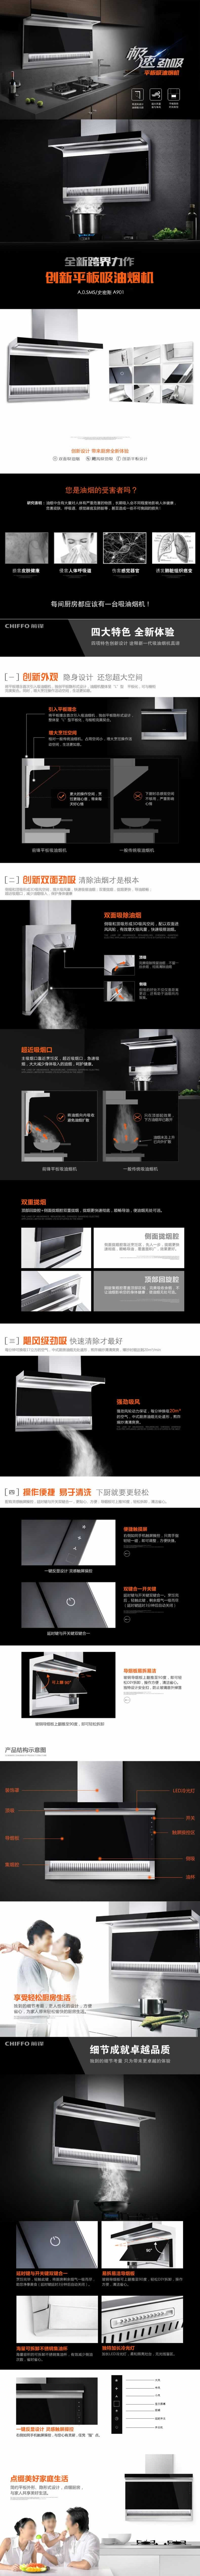 创新平板吸油烟机厨房电器描述